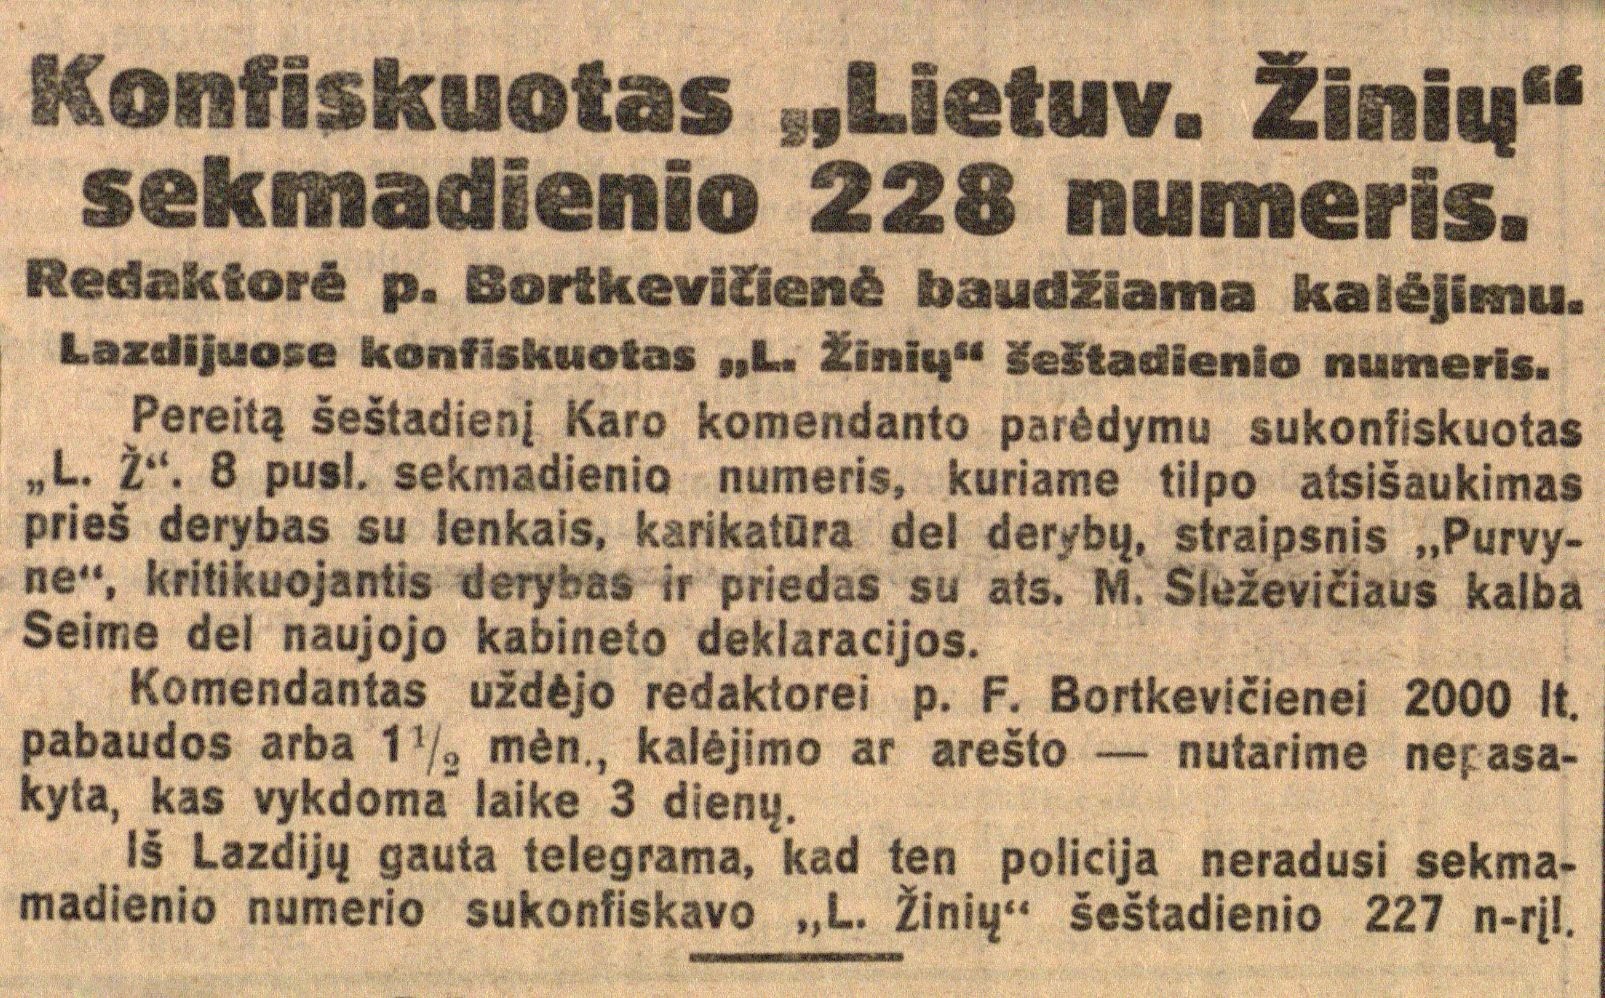 Konfiskuotas „Lietuvos žinių“ sekmadienio 228 numeris. Redaktorė p. Bortkevičienė baudžiama kalėjimu